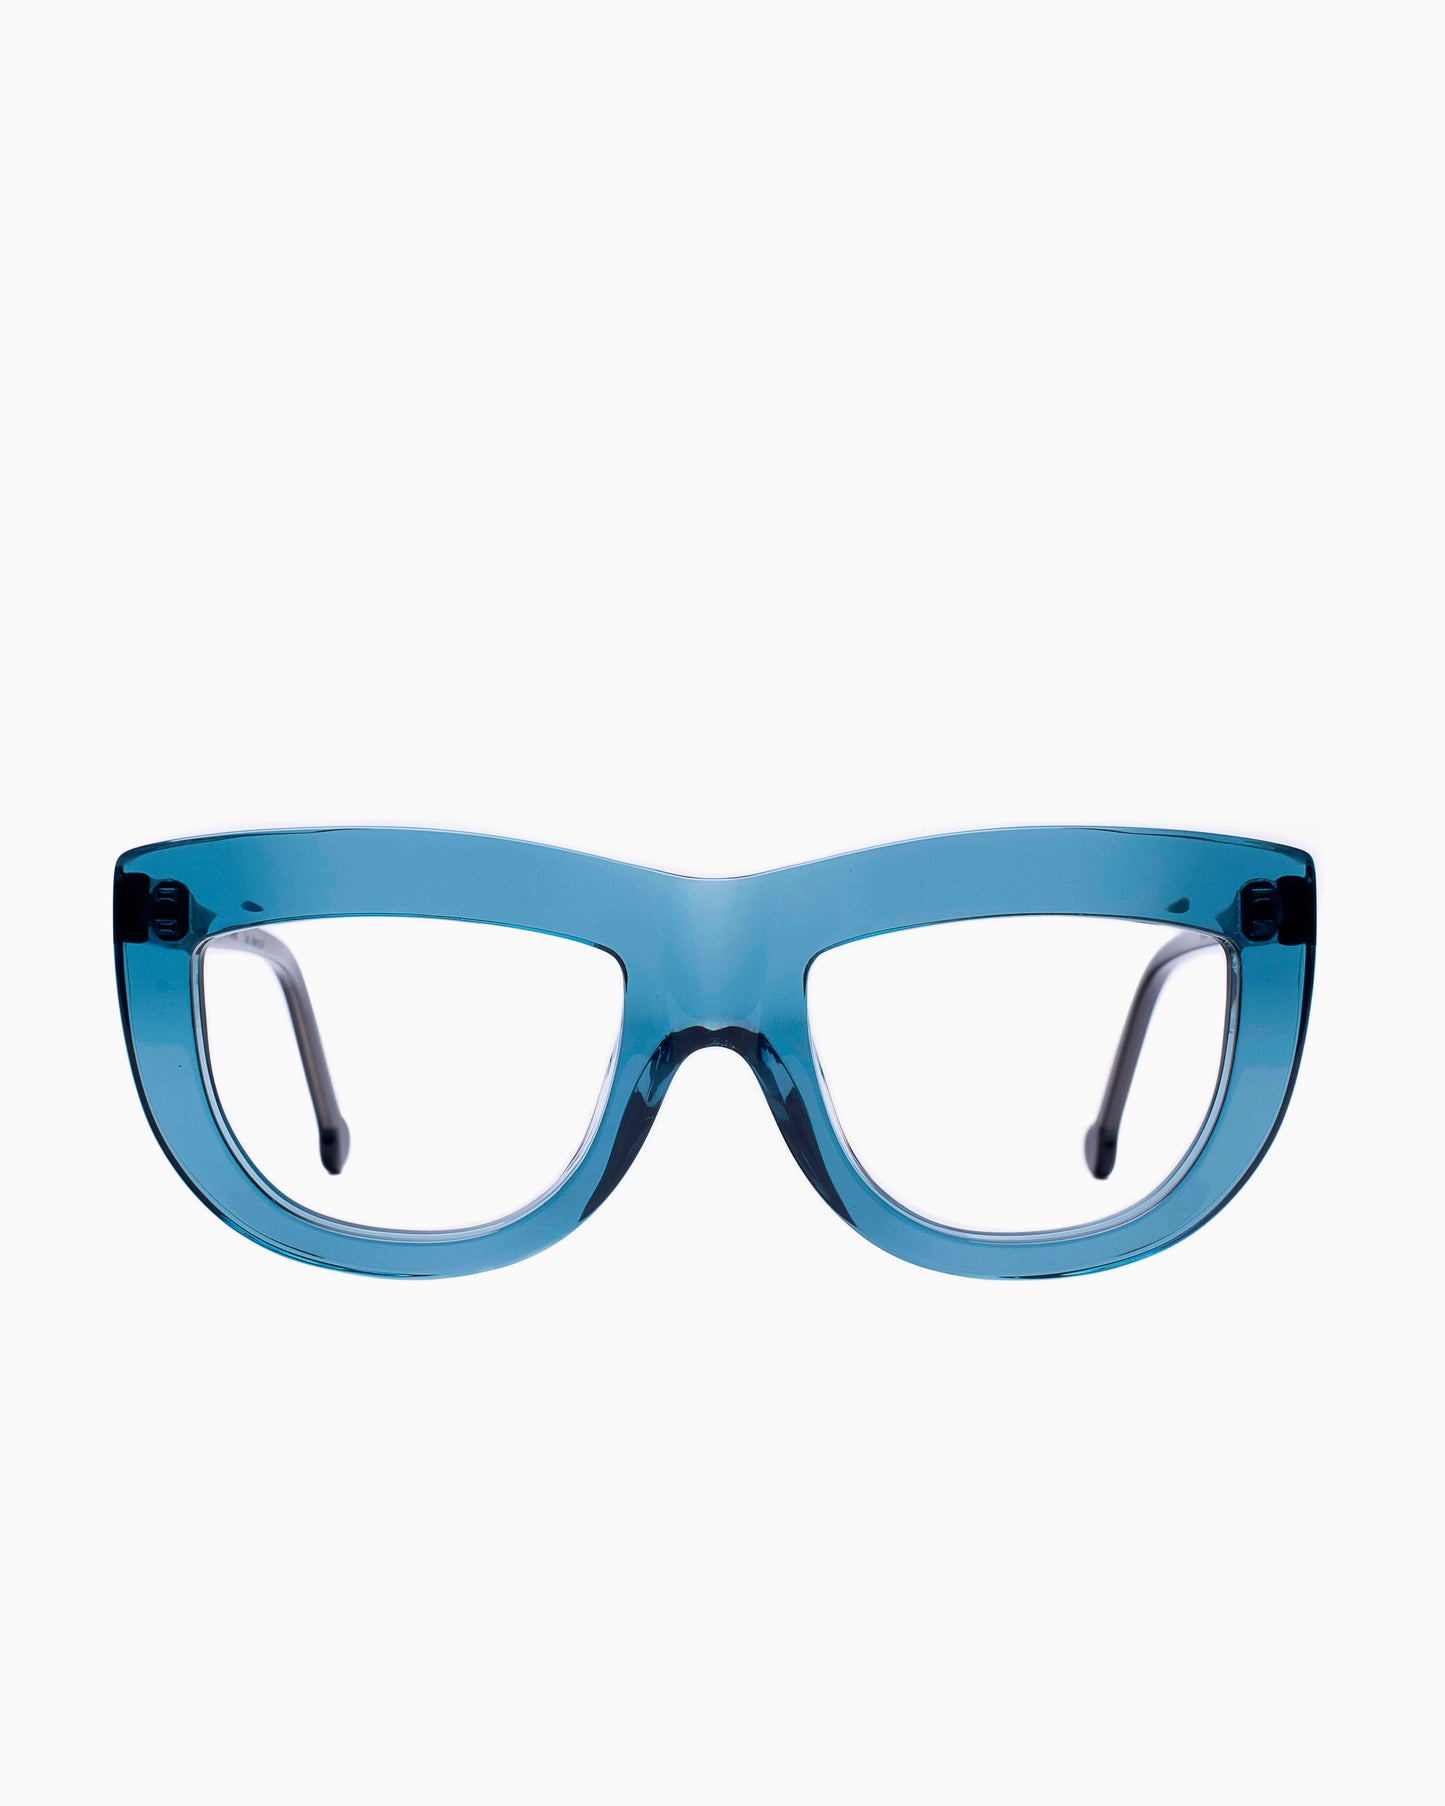 Marie-Sophie Dion - Germain - Blu | glasses bar